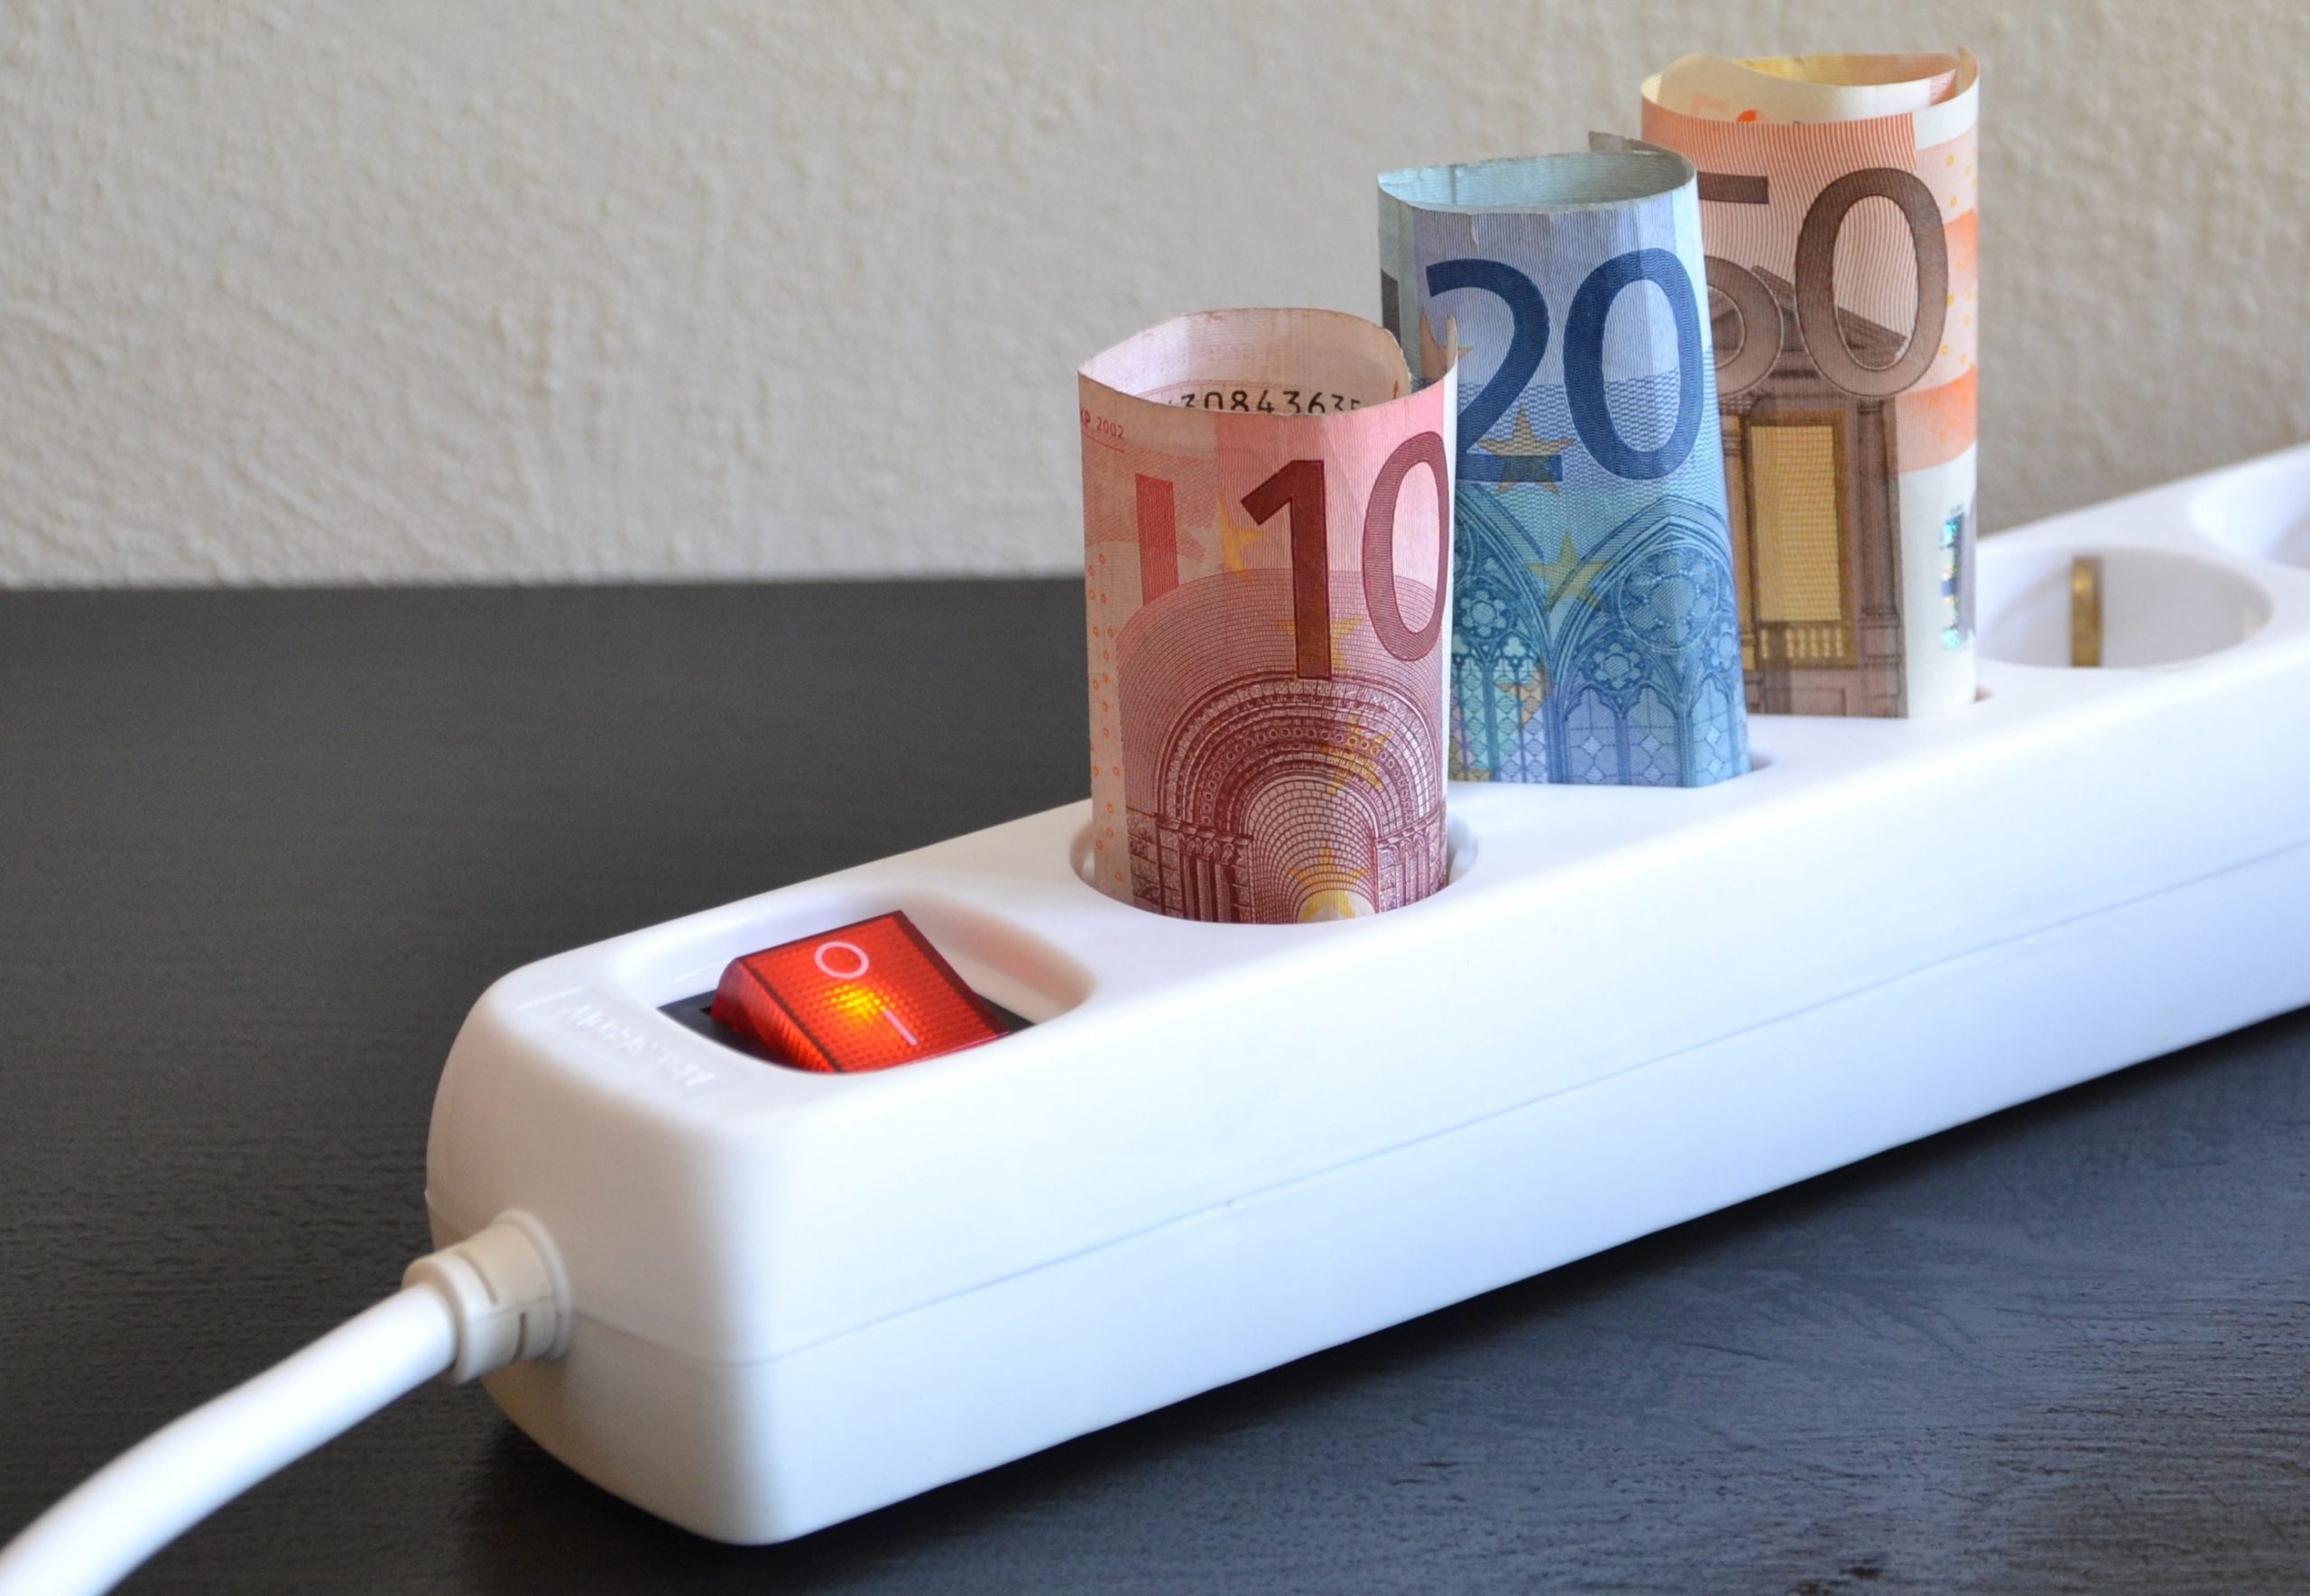 10 Sofort-Maßnahmen zum Energiesparen daheim